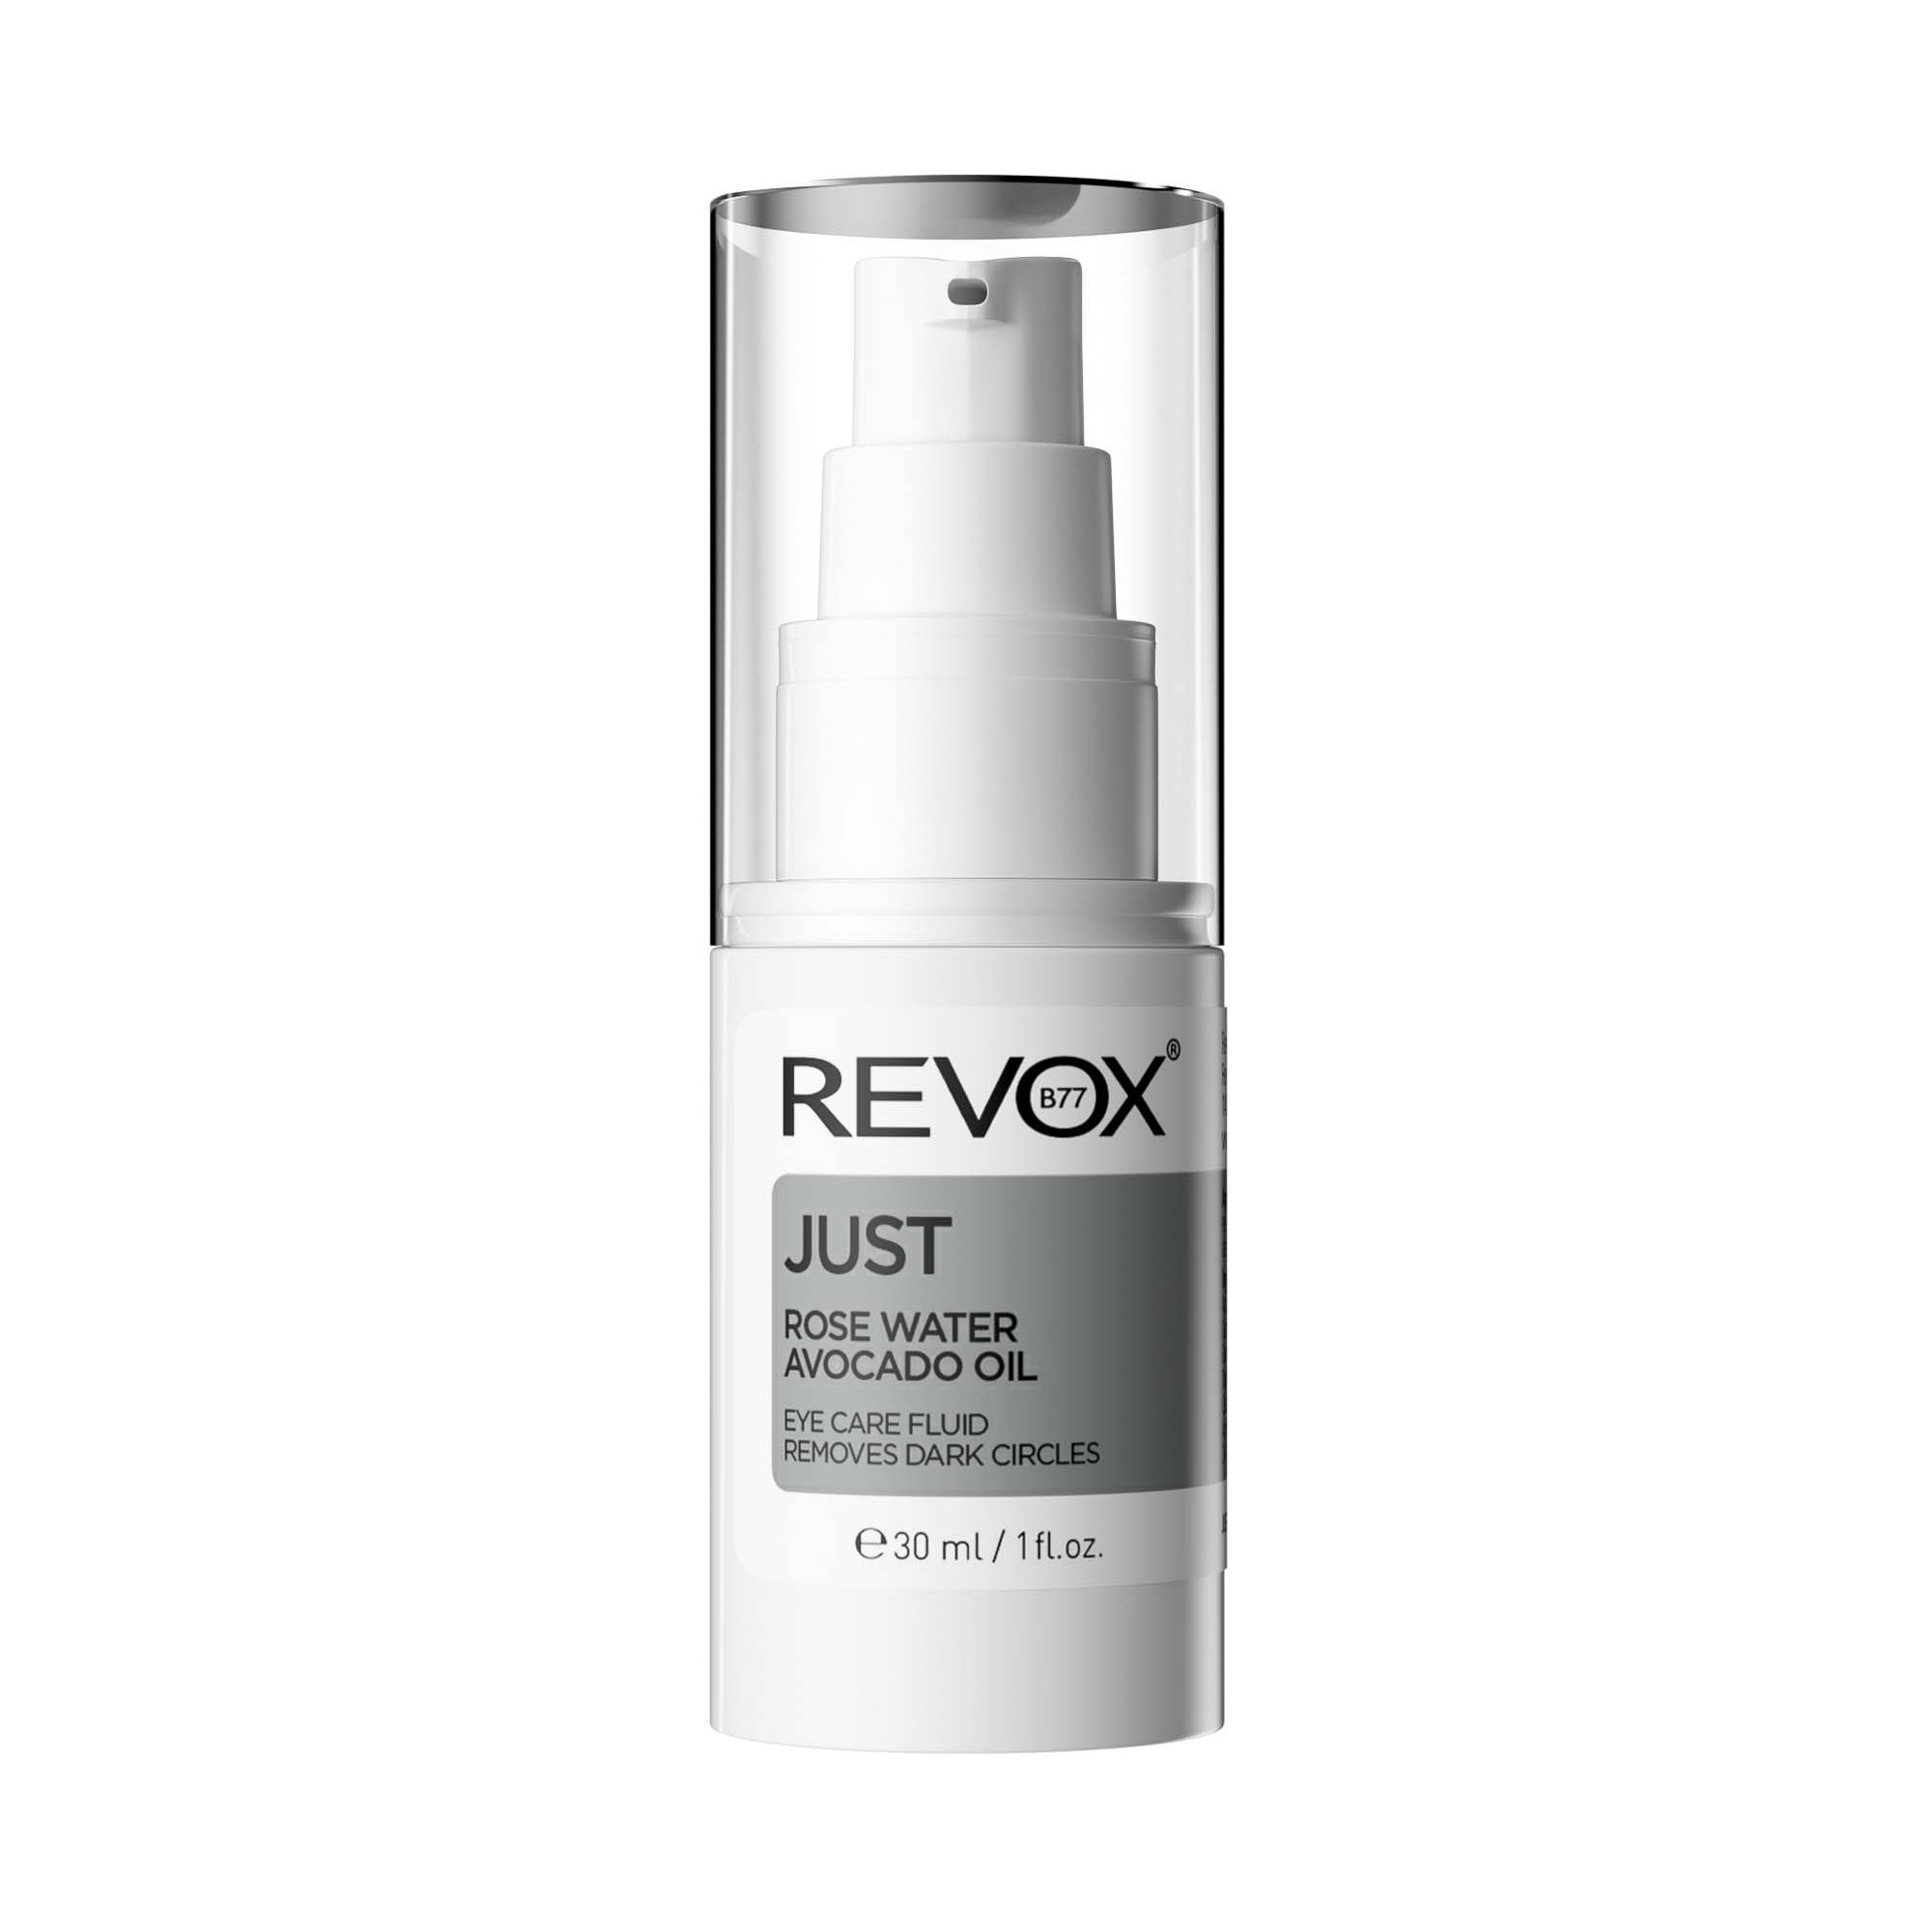 Revox JUST REVOX B77 Eye care fluid 30 ml